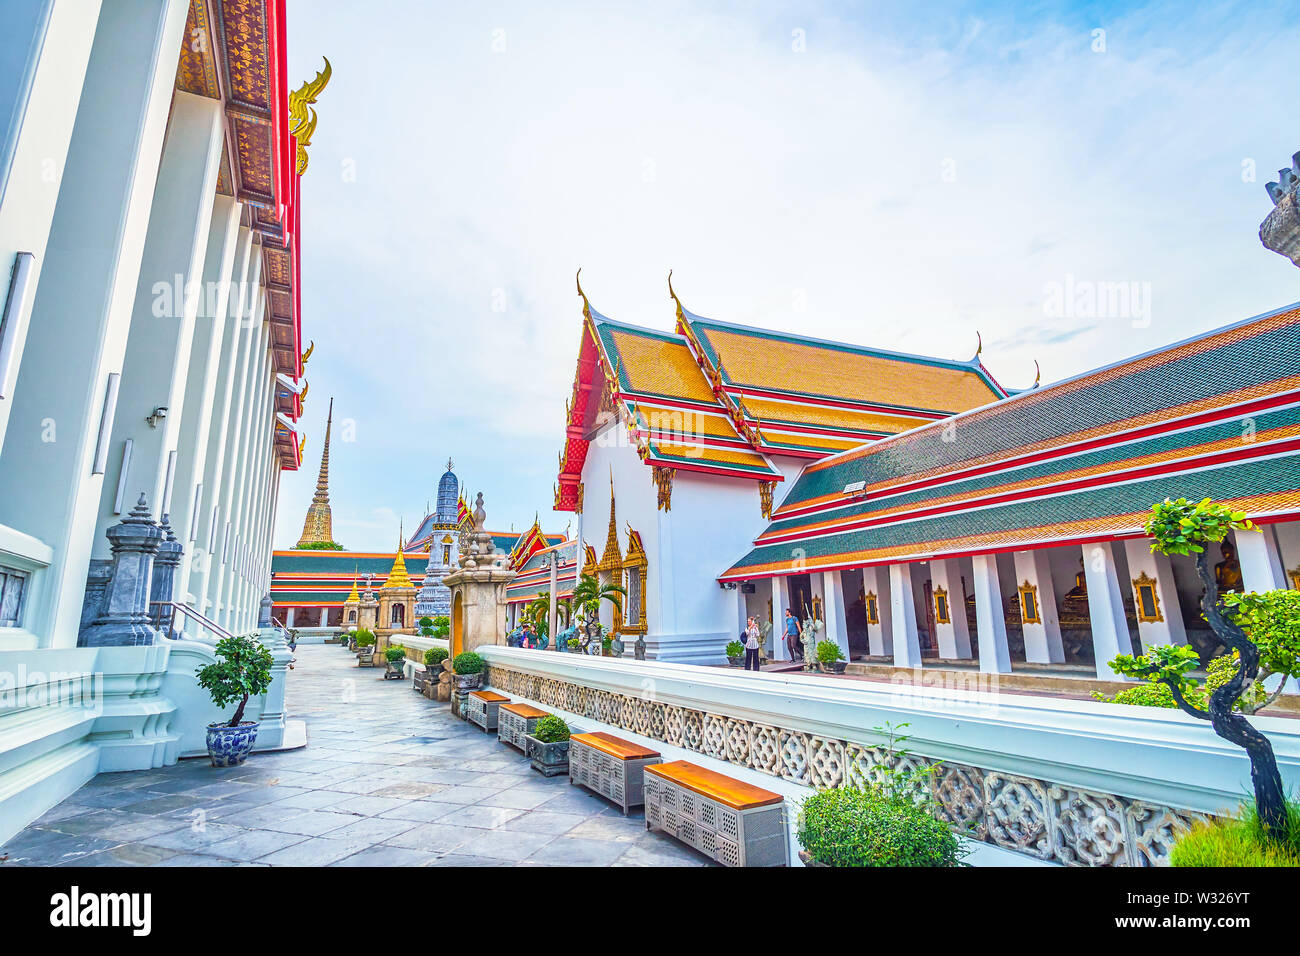 BANGKOK, THAILAND - 22. APRIL 2019: Die umliegenden Balustrade von Phra Ubosot Tempel mit Regalen für Schuhe, vor dem Eingang zum Heiligtum, auf der Apr Stockfoto